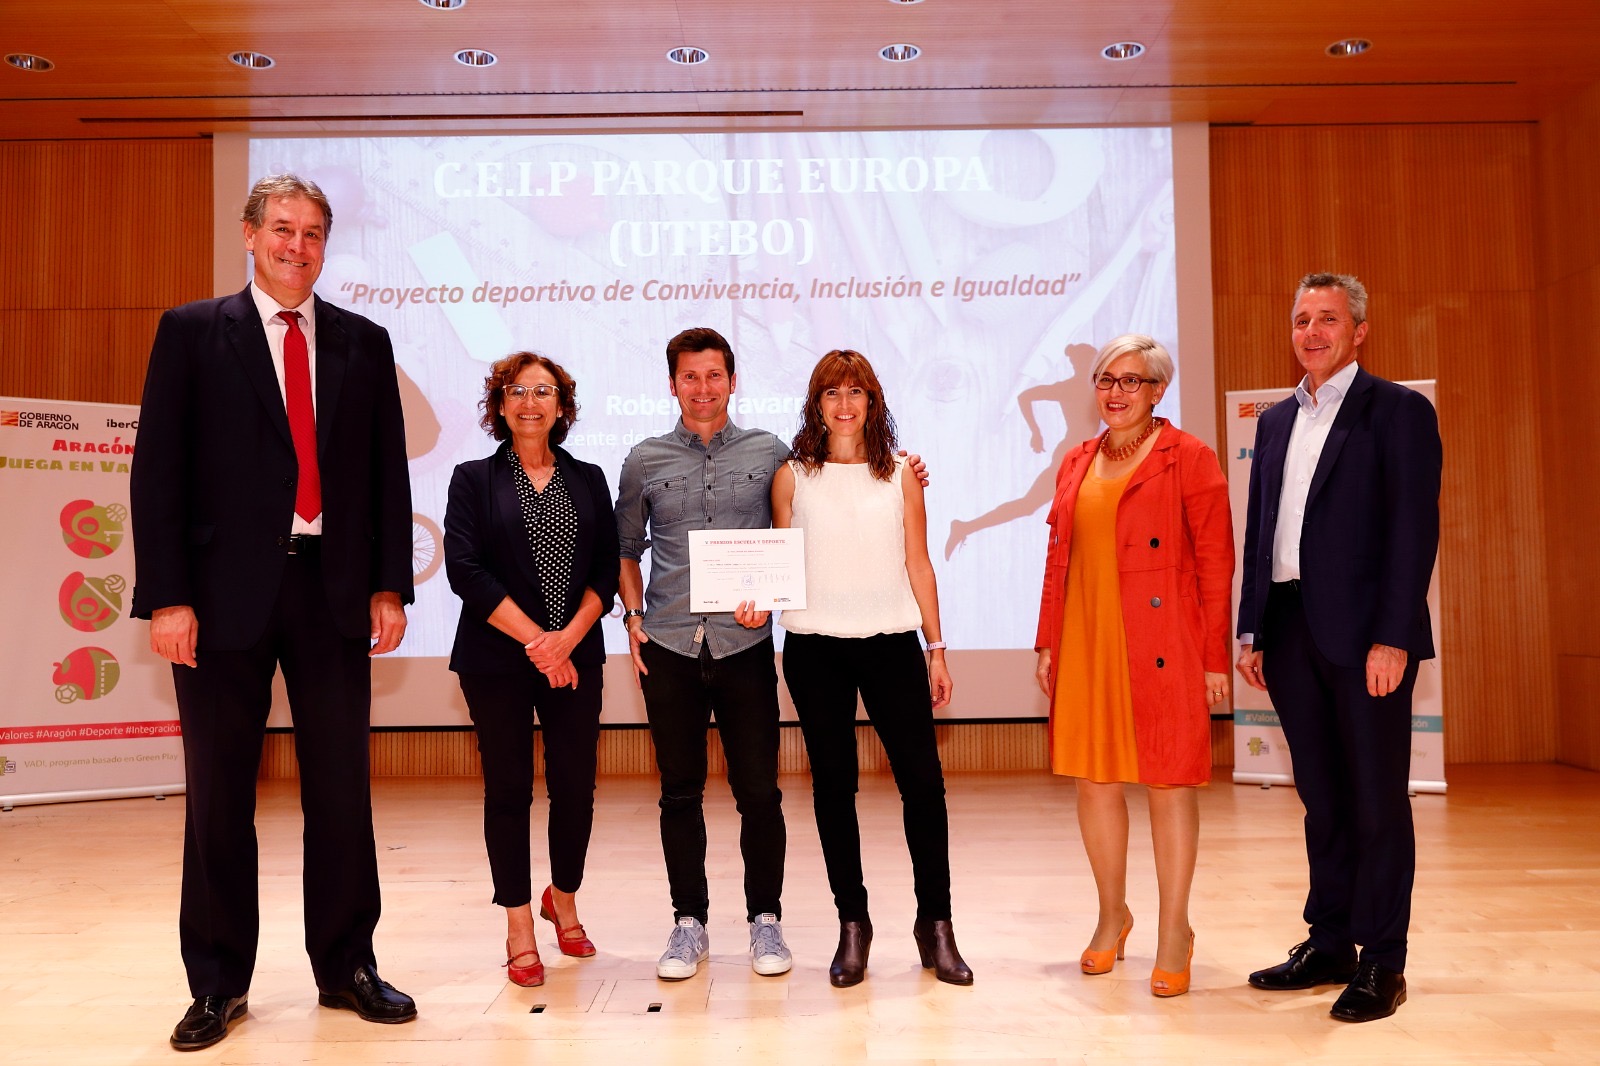 El CEIP “Parque Europa”, de Utebo (Zaragoza) recibe el Premio Escuela y Deporte